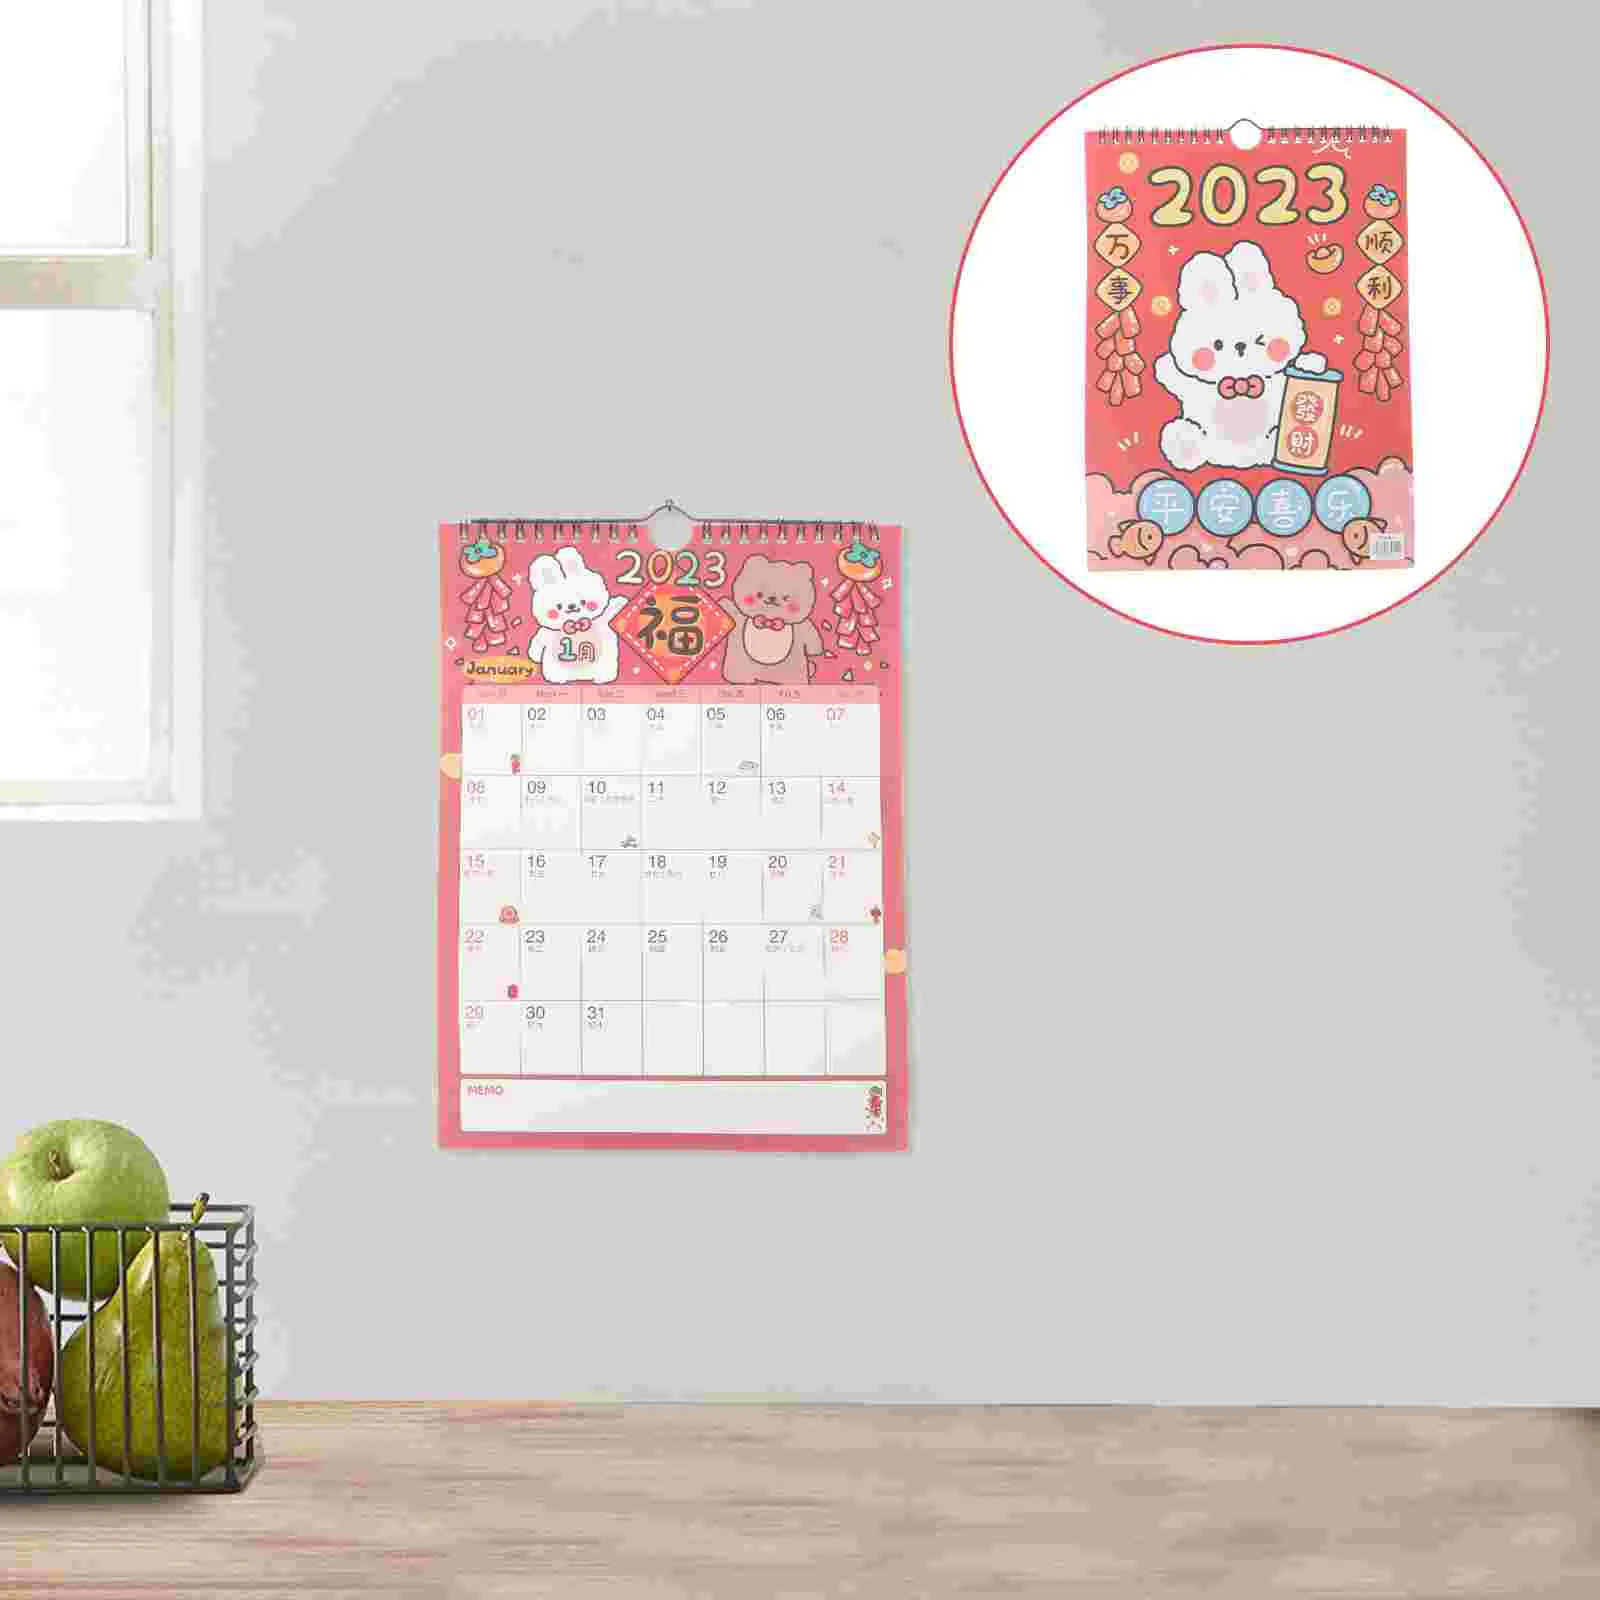 

Календарь подвесной в виде кролика на год, Календарь Настенный в китайском стиле, подвесной календарь на лунную стену 2023, календарь на лунну...